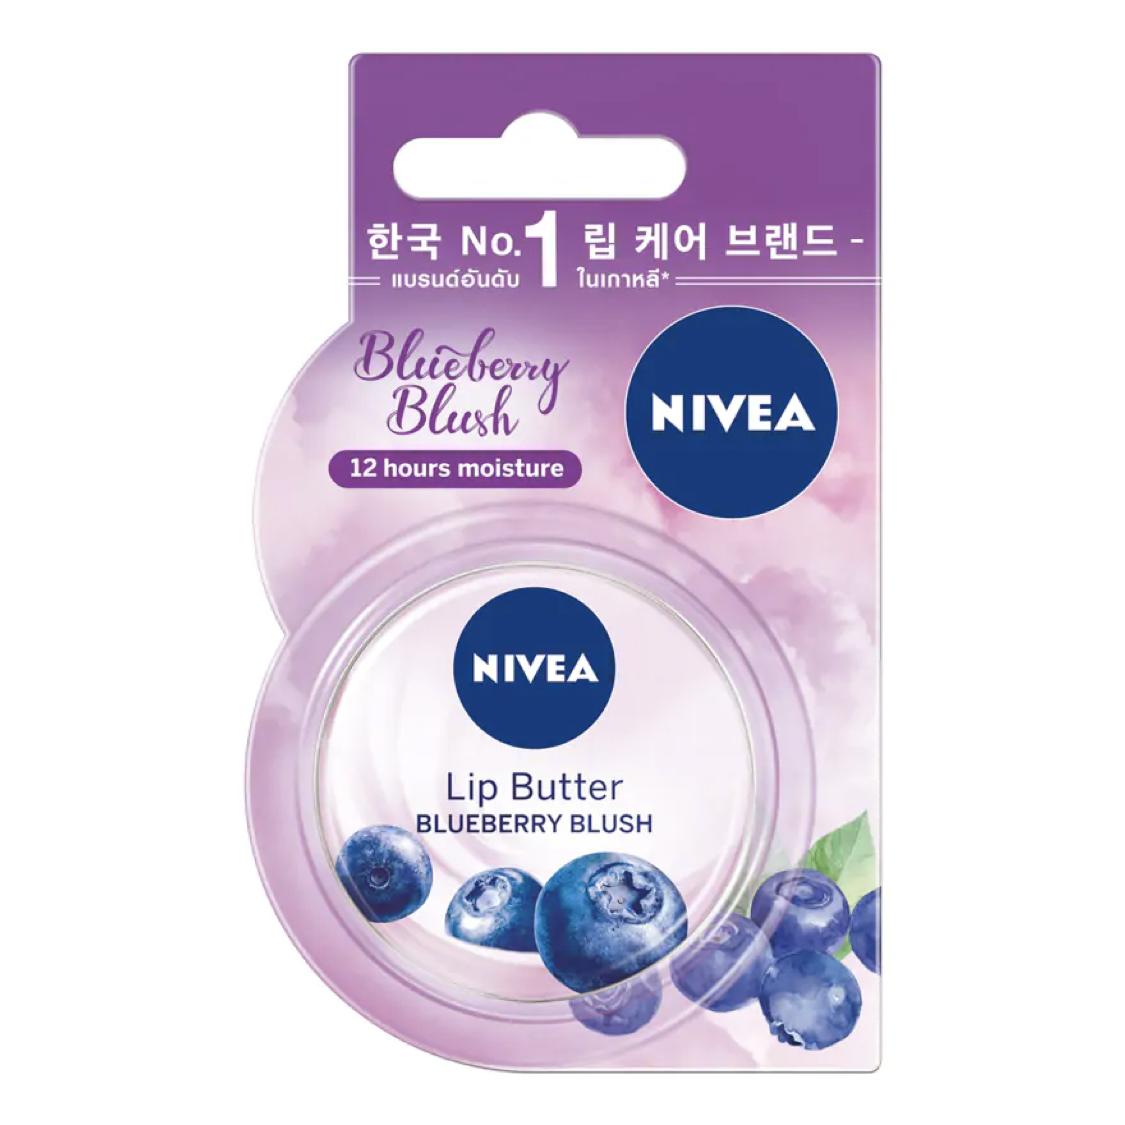 Nivea Lip Butter Blueberry Blush นีเวีย ลิป บัตเตอร์ บลูเบอร์รี่ บลัช 16.7g.